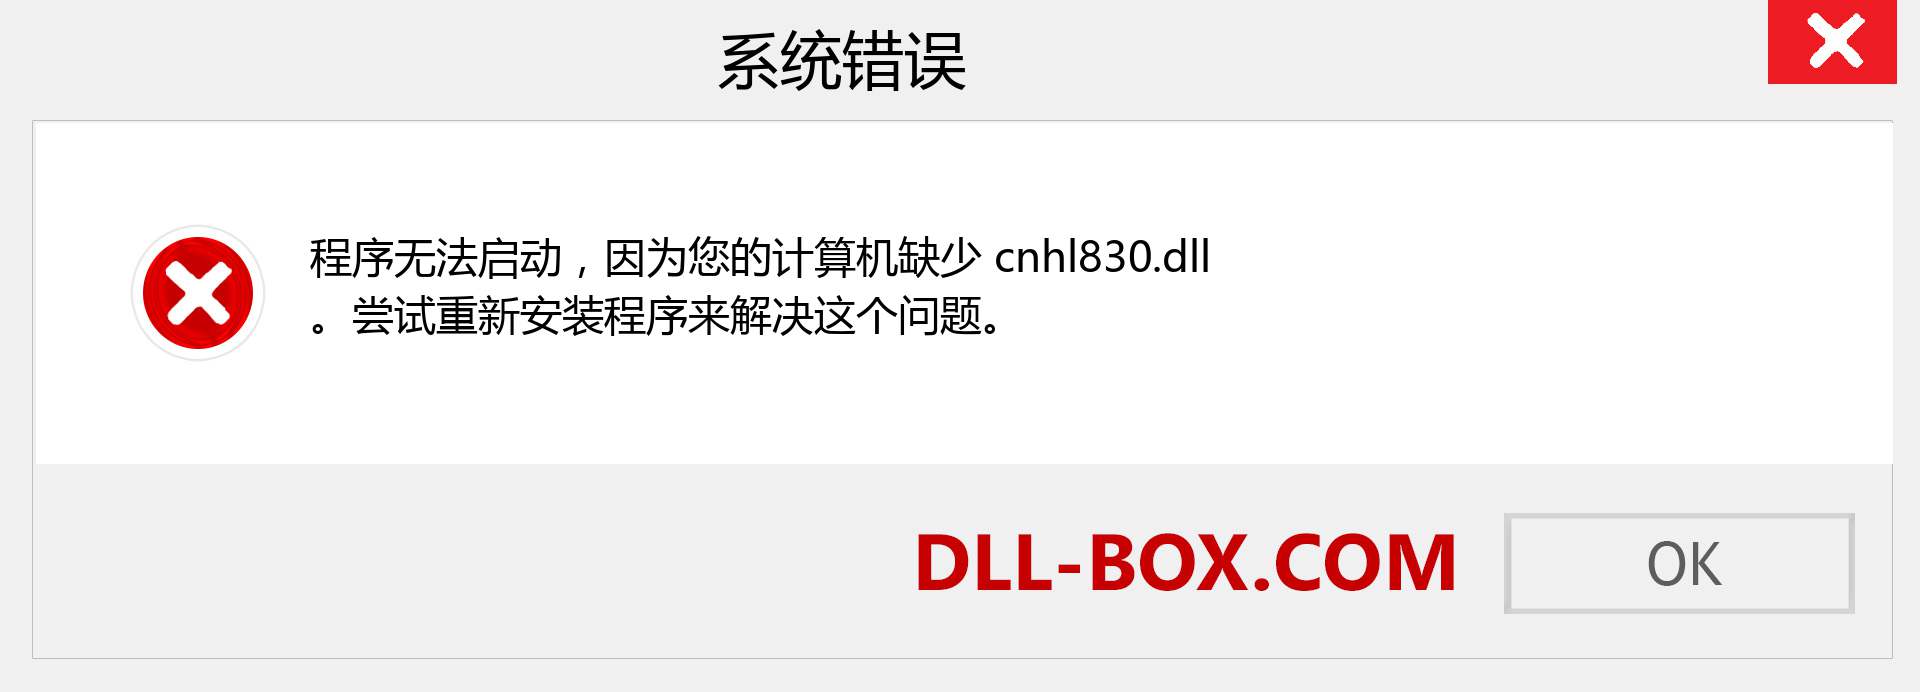 cnhl830.dll 文件丢失？。 适用于 Windows 7、8、10 的下载 - 修复 Windows、照片、图像上的 cnhl830 dll 丢失错误